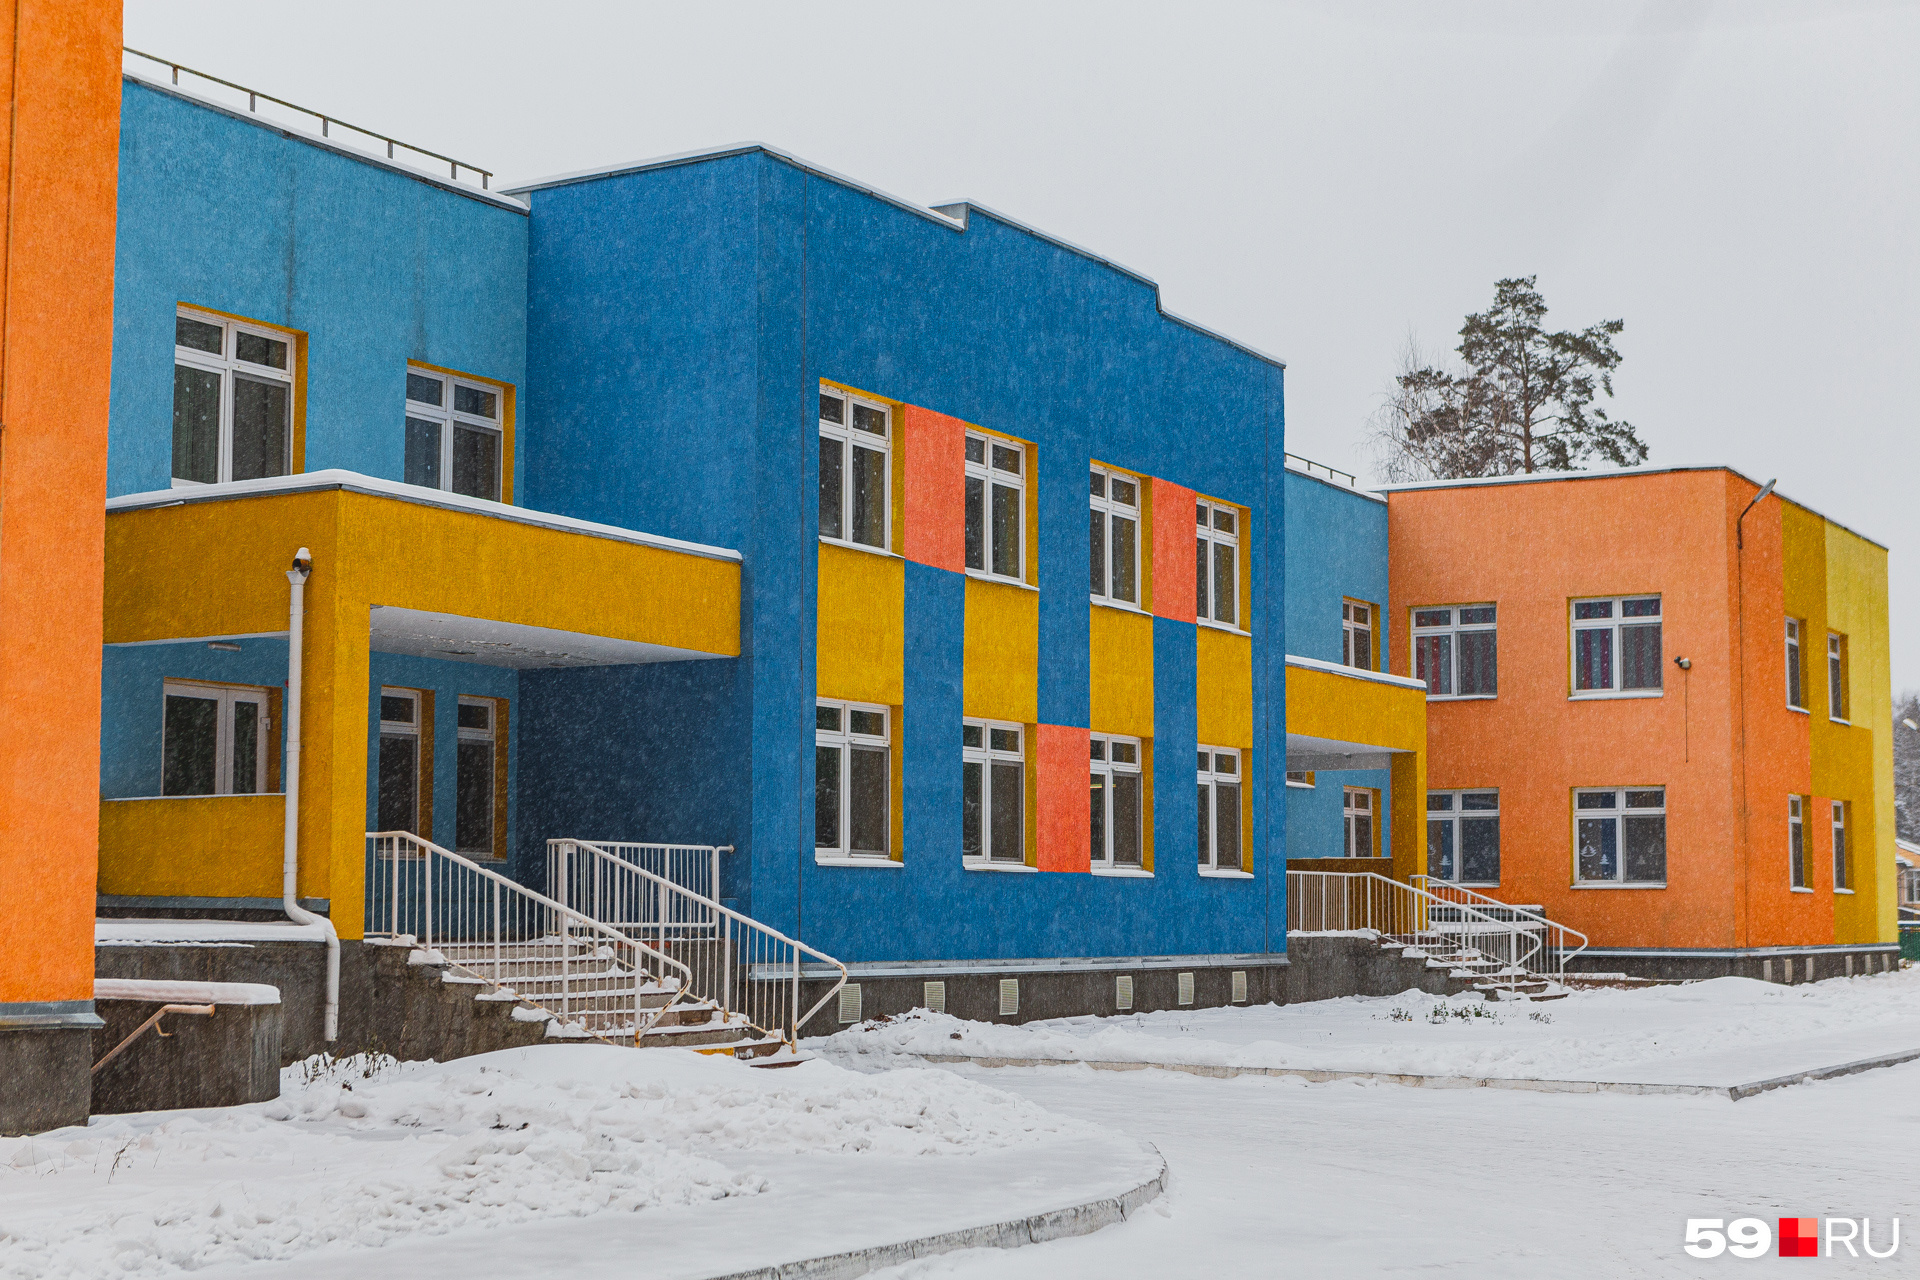 Для детей в «Боровиках» был построен новый корпус детского сада «Легополис»